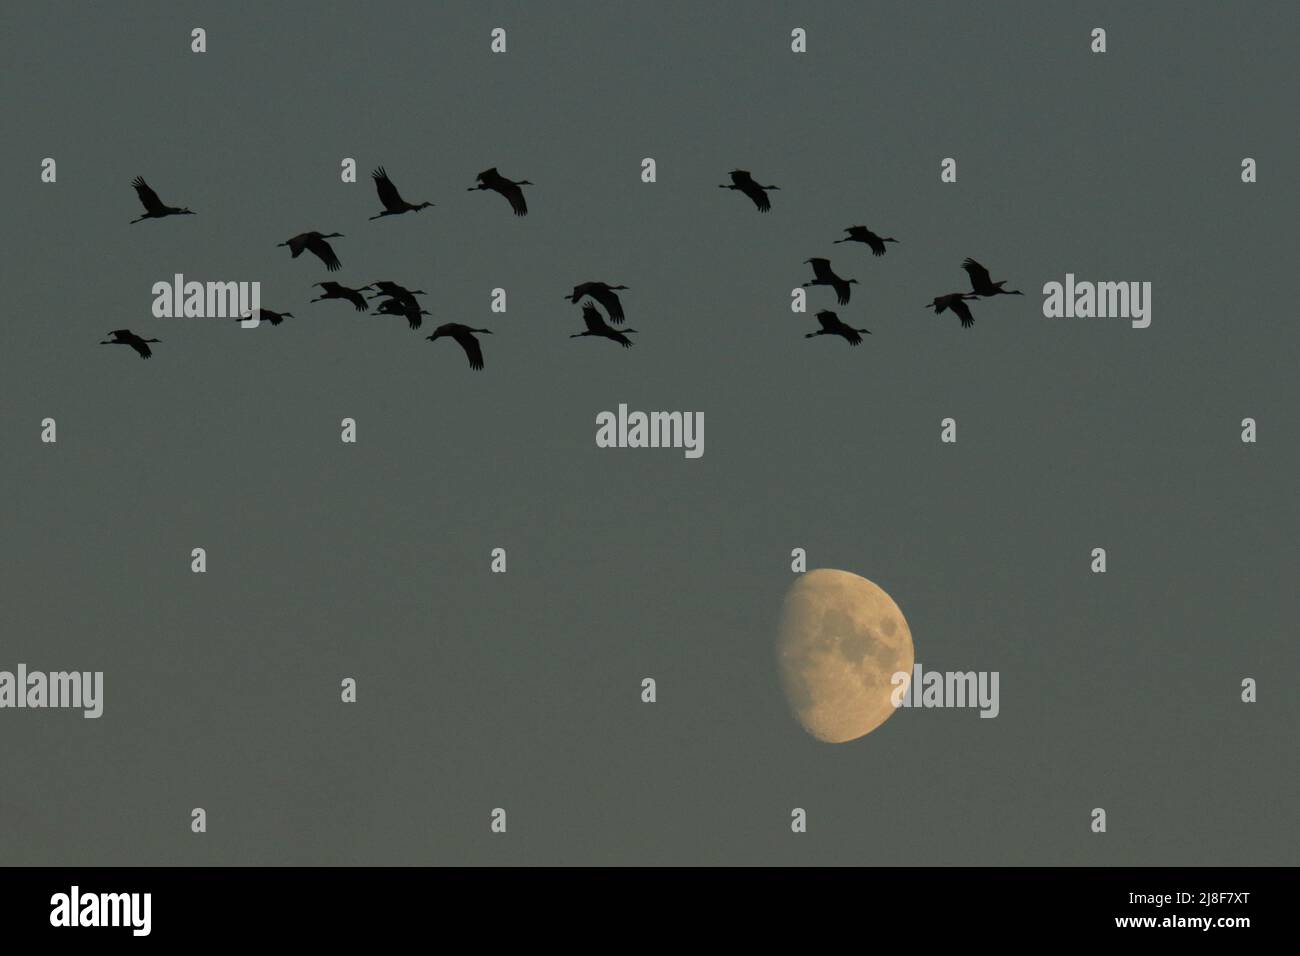 Un troupeau de dix-huit grues (Antigone canadensis) volant en silhouette au-dessus de la lune au crépuscule. Prise à Victoria, C.-B., Canada. Banque D'Images